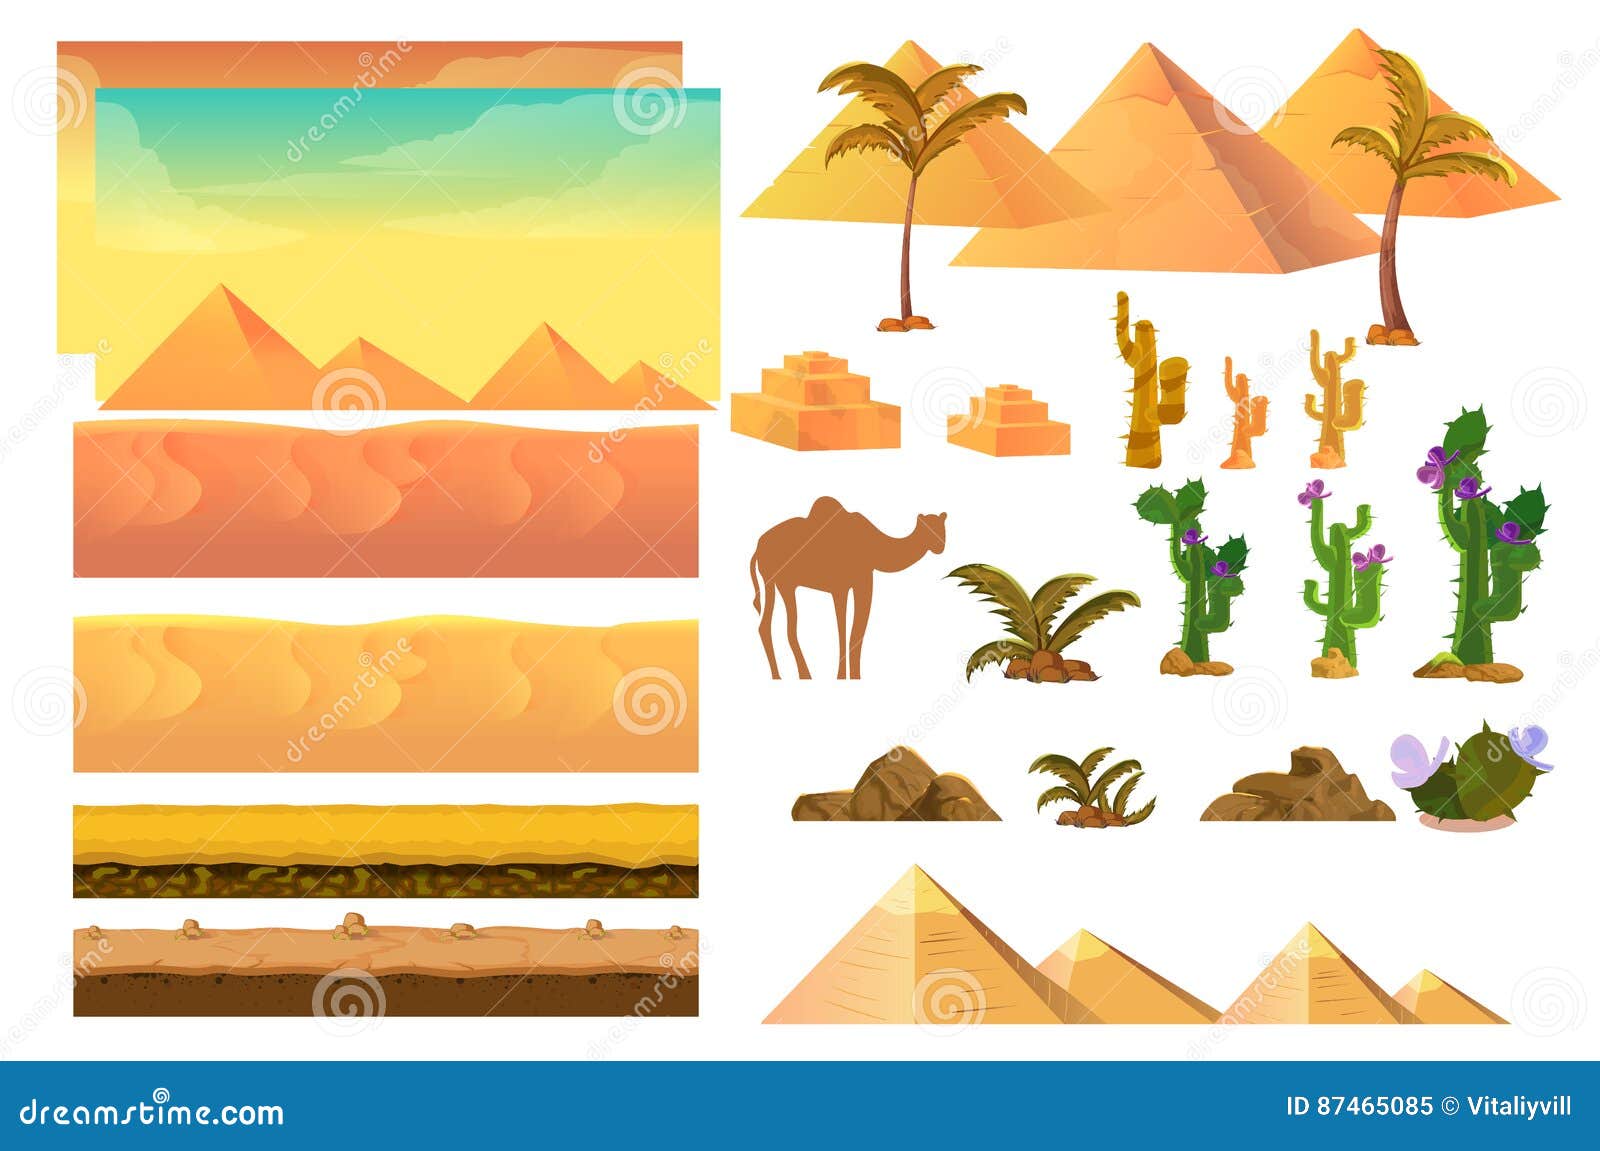 Bạn yêu hoạt hình? Bạn yêu sa mạc? Phông nền hoạt hình sa mạc này sẽ đem đến cho bạn những giây phút thư giãn tuyệt vời. Nền hình ảnh đẹp mắt sẽ giúp bạn tập trung và cảm thấy thoải mái hơn. Hãy xem hình ảnh ngay để trải nghiệm!